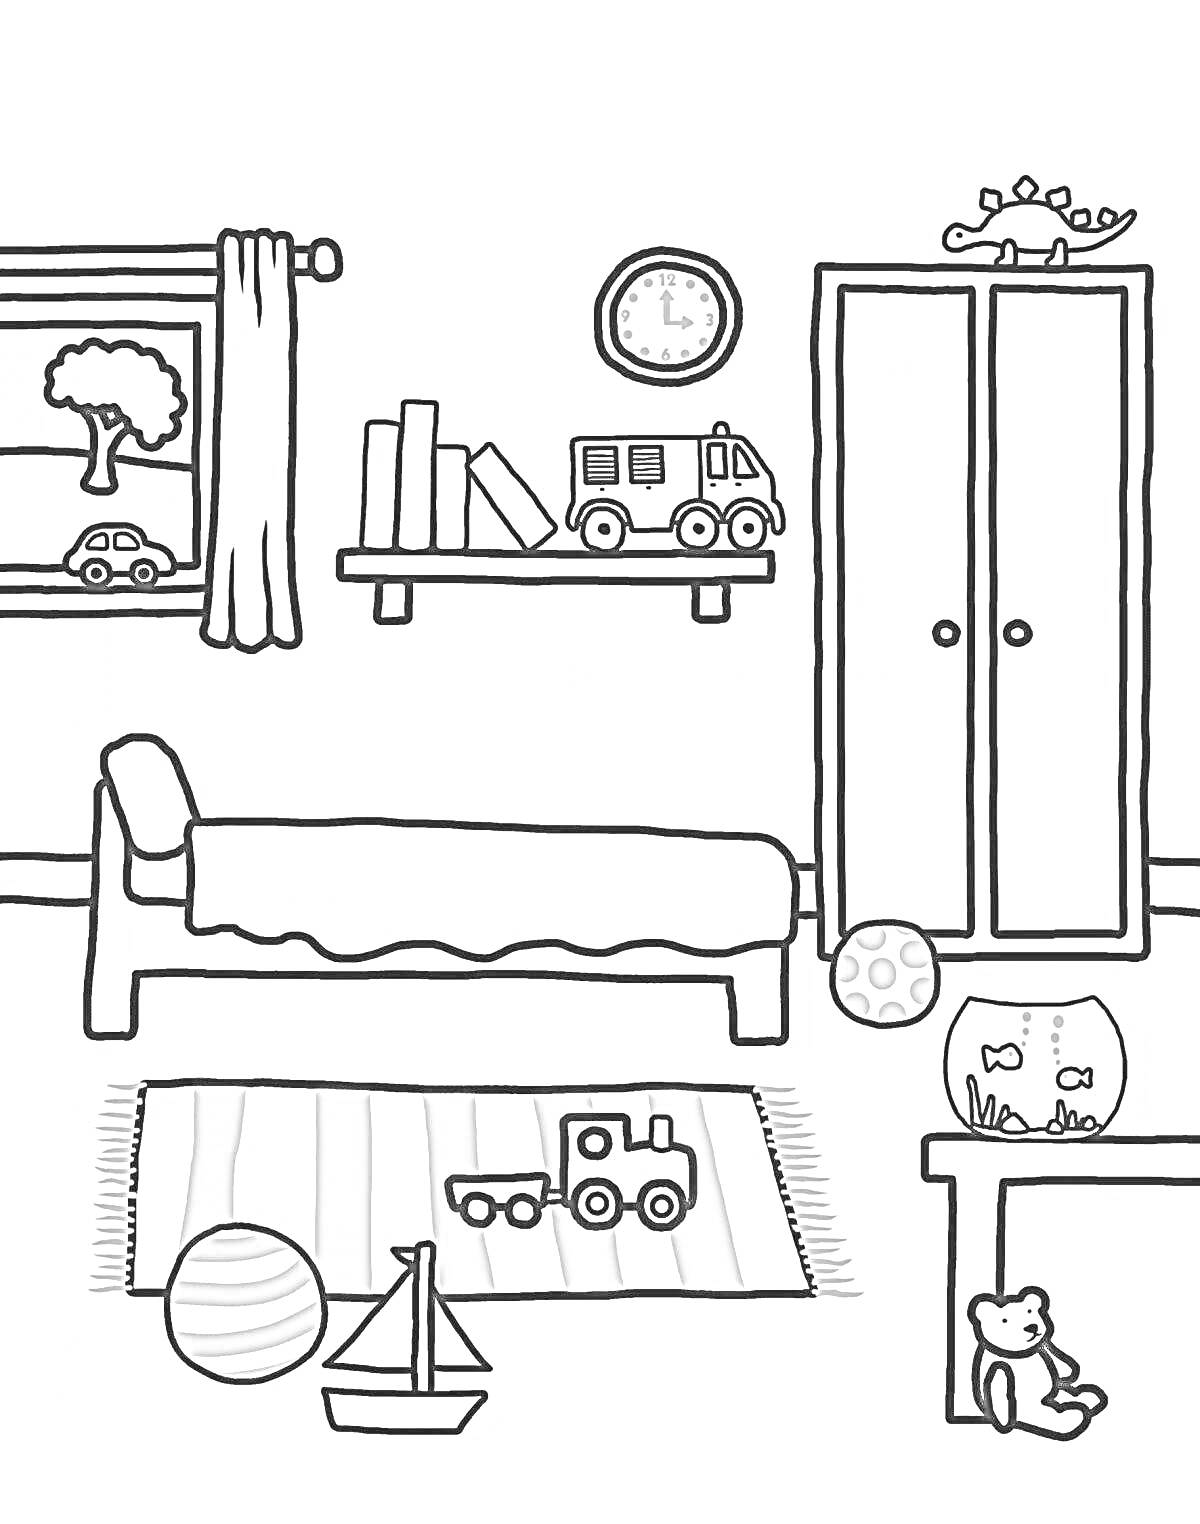 Раскраска Игровая комната с кроватью, ковриком, машинками, книгами, полкой, часами, аквариумом с рыбками, мячом, игрушечным медведем, шкафчиком и окном